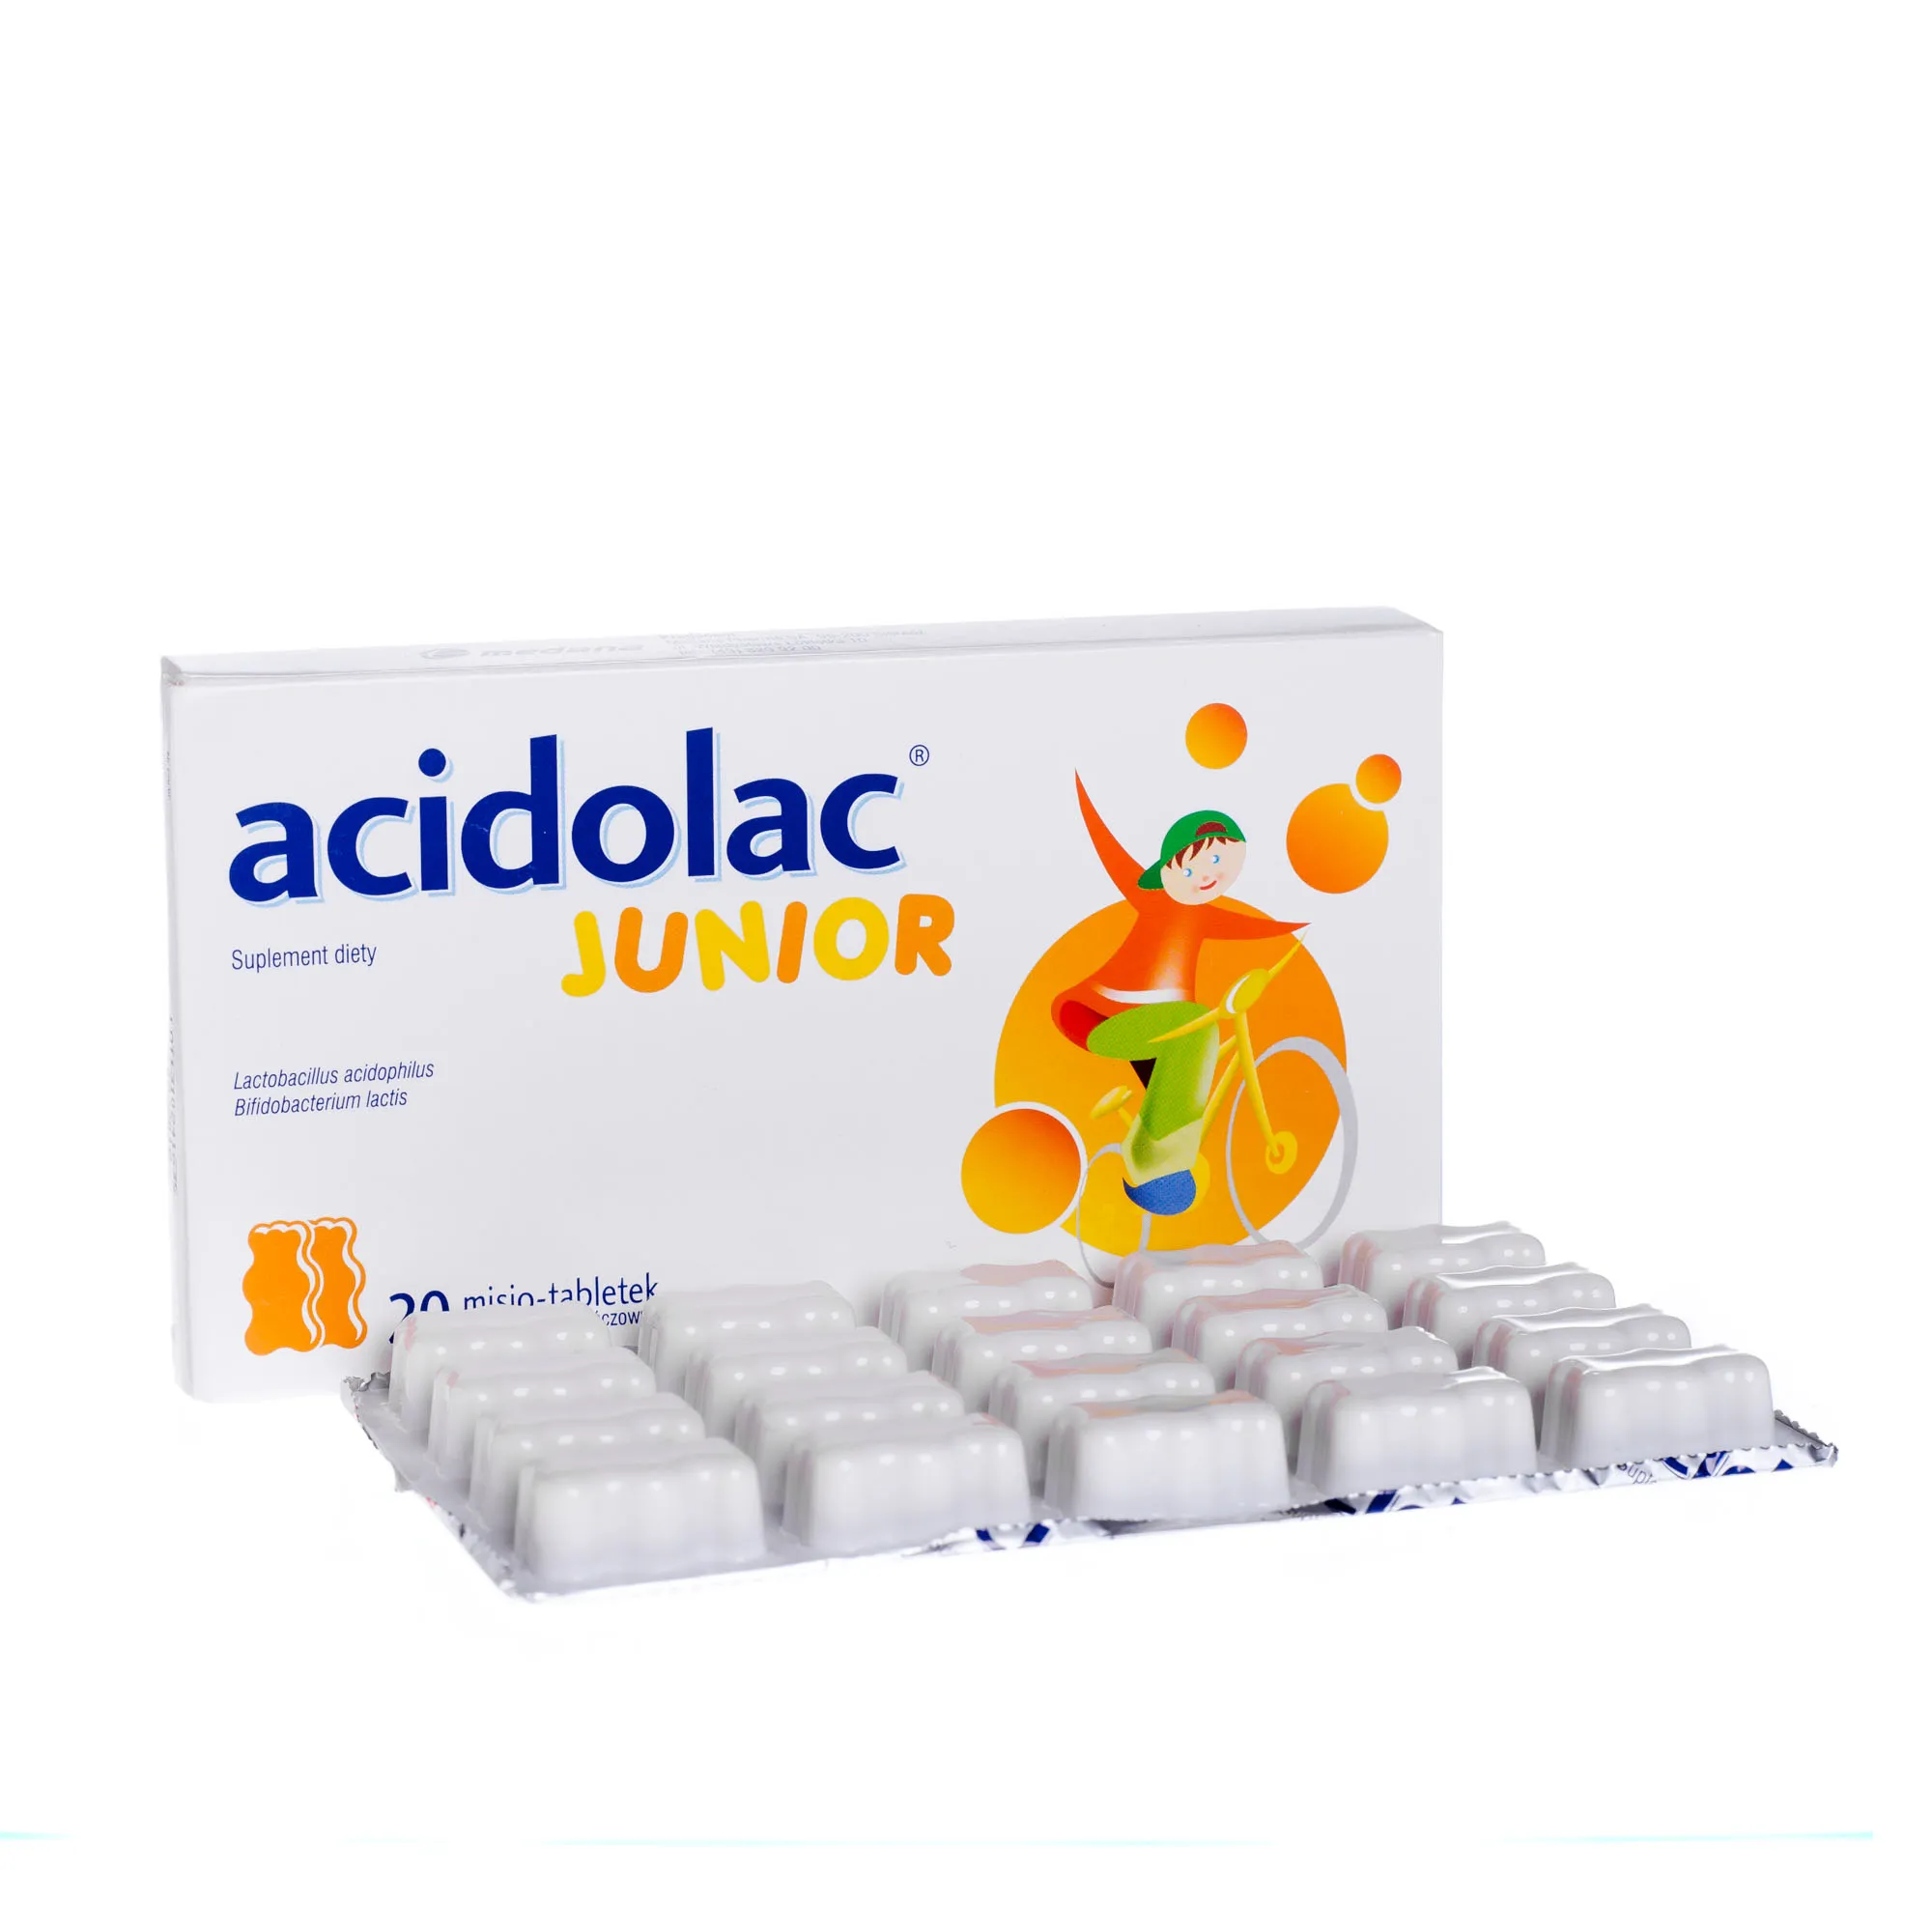 Acidolac Junior, suplement diety, 20 misio-tabletek o smaku pomarańczowym